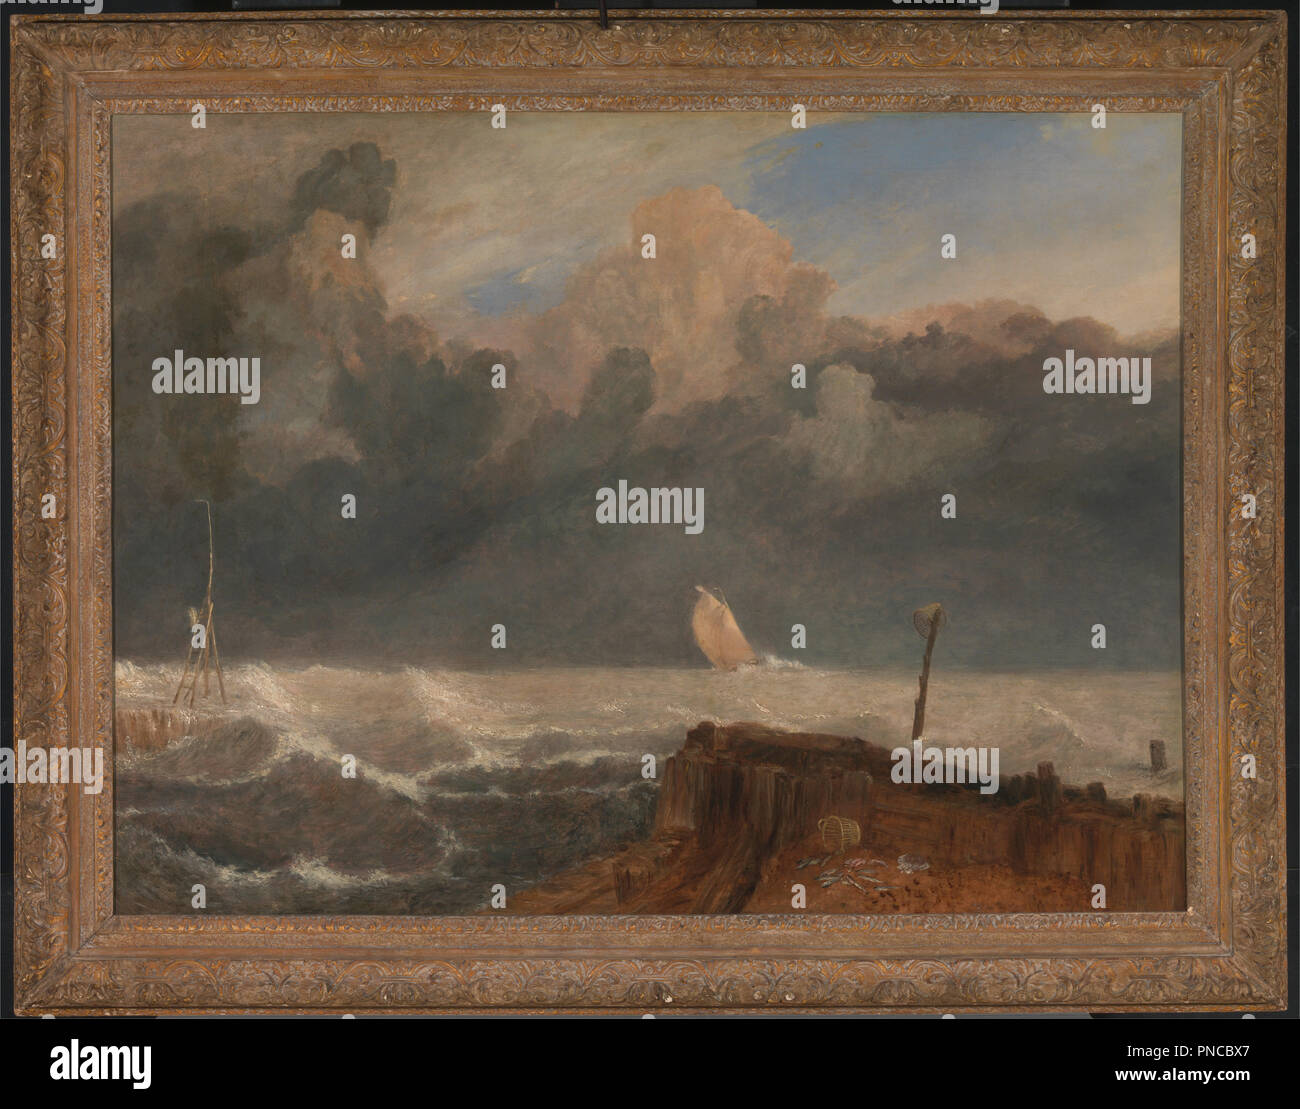 Port Ruysdael. Date/Période : Entre 1826 et 1827. La peinture. Huile sur toile. Hauteur : 1 127 mm (44.37 in) ; largeur : 1 486 mm (58.50 in). Auteur : J. M. W. Turner. Banque D'Images